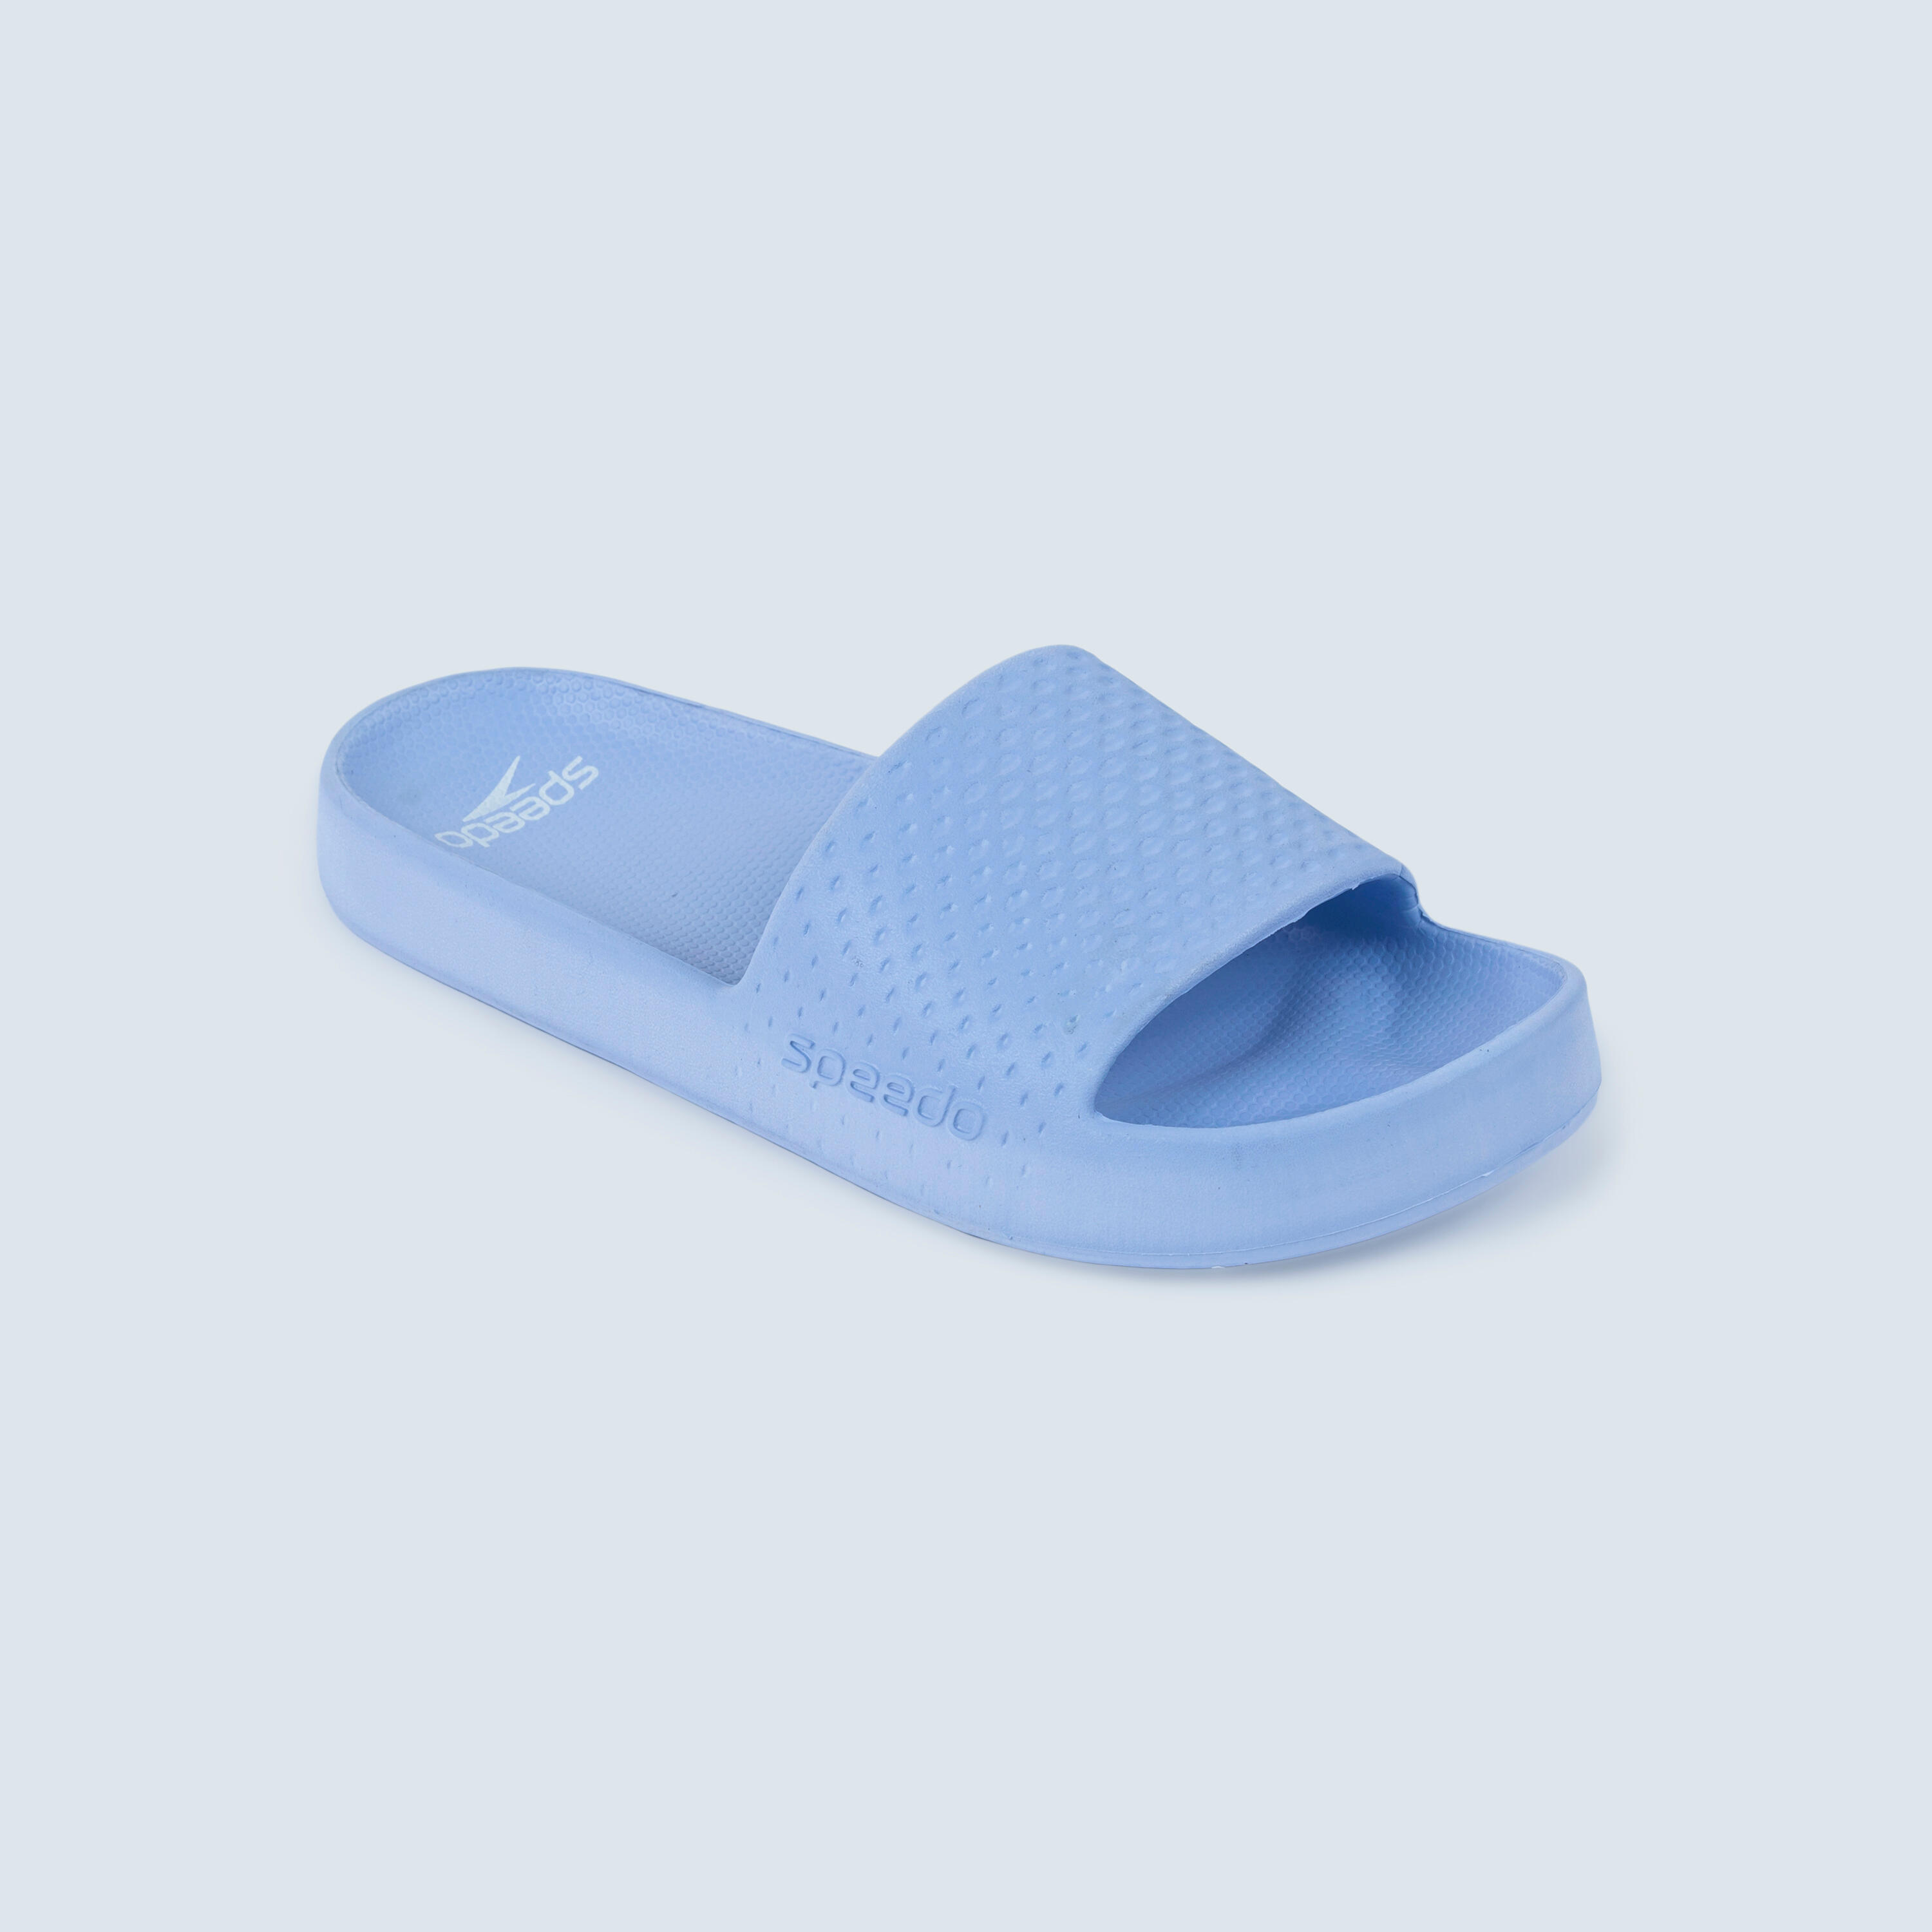 SPEEDO SPEEDO ENTRY flipflop sandals blue